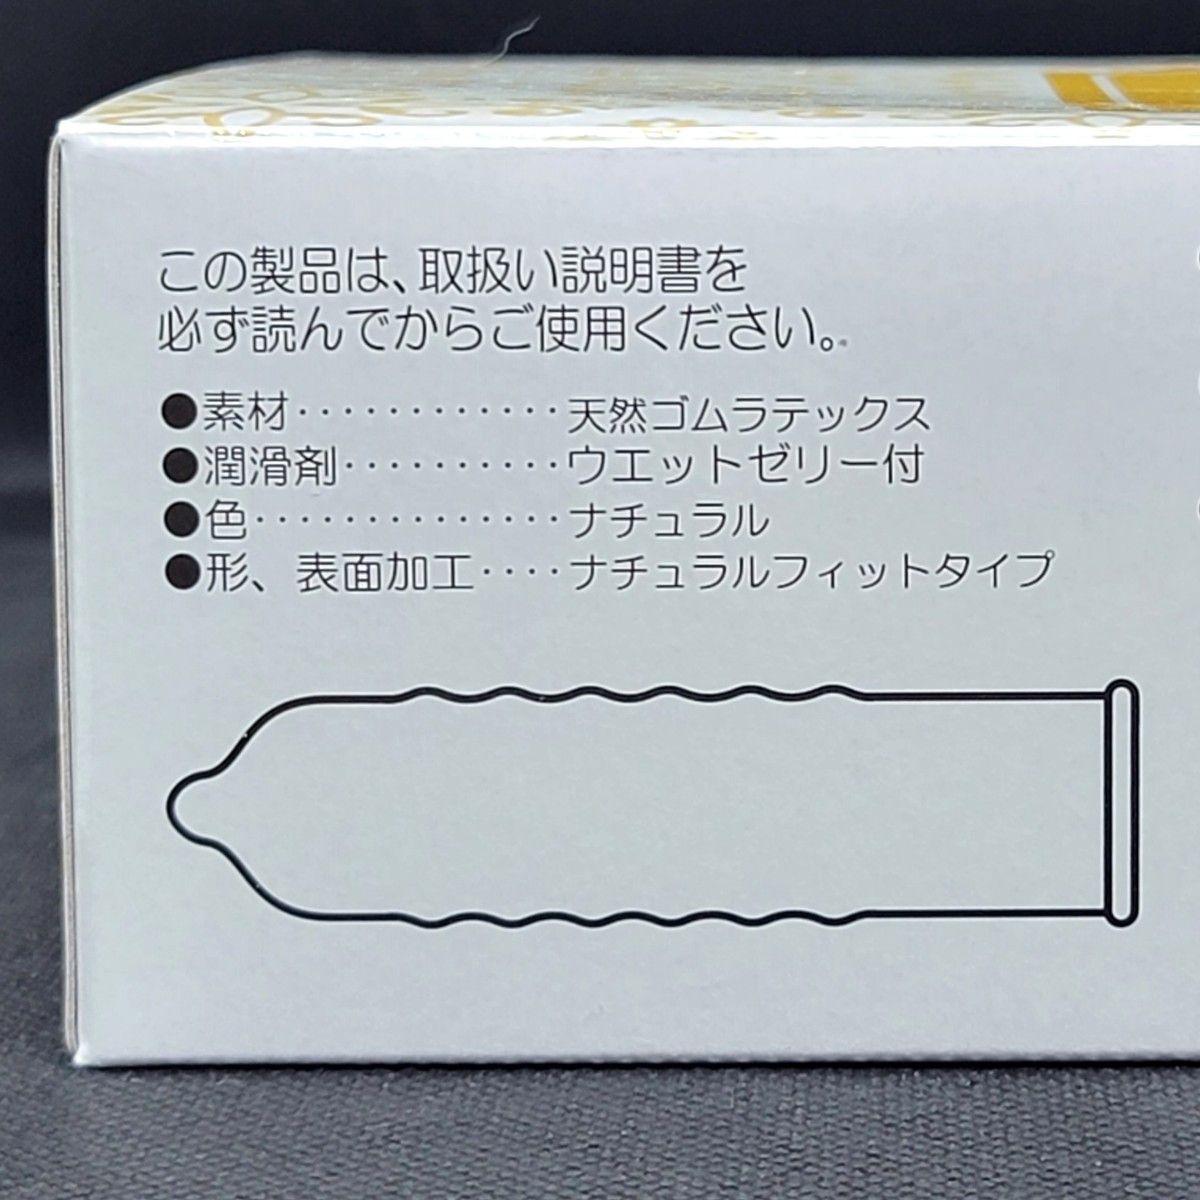  業務用コンドーム サックス Rich(リッチ) 003 Mサイズ 72個 0.03mm ジャパンメディカル スキン 避妊具